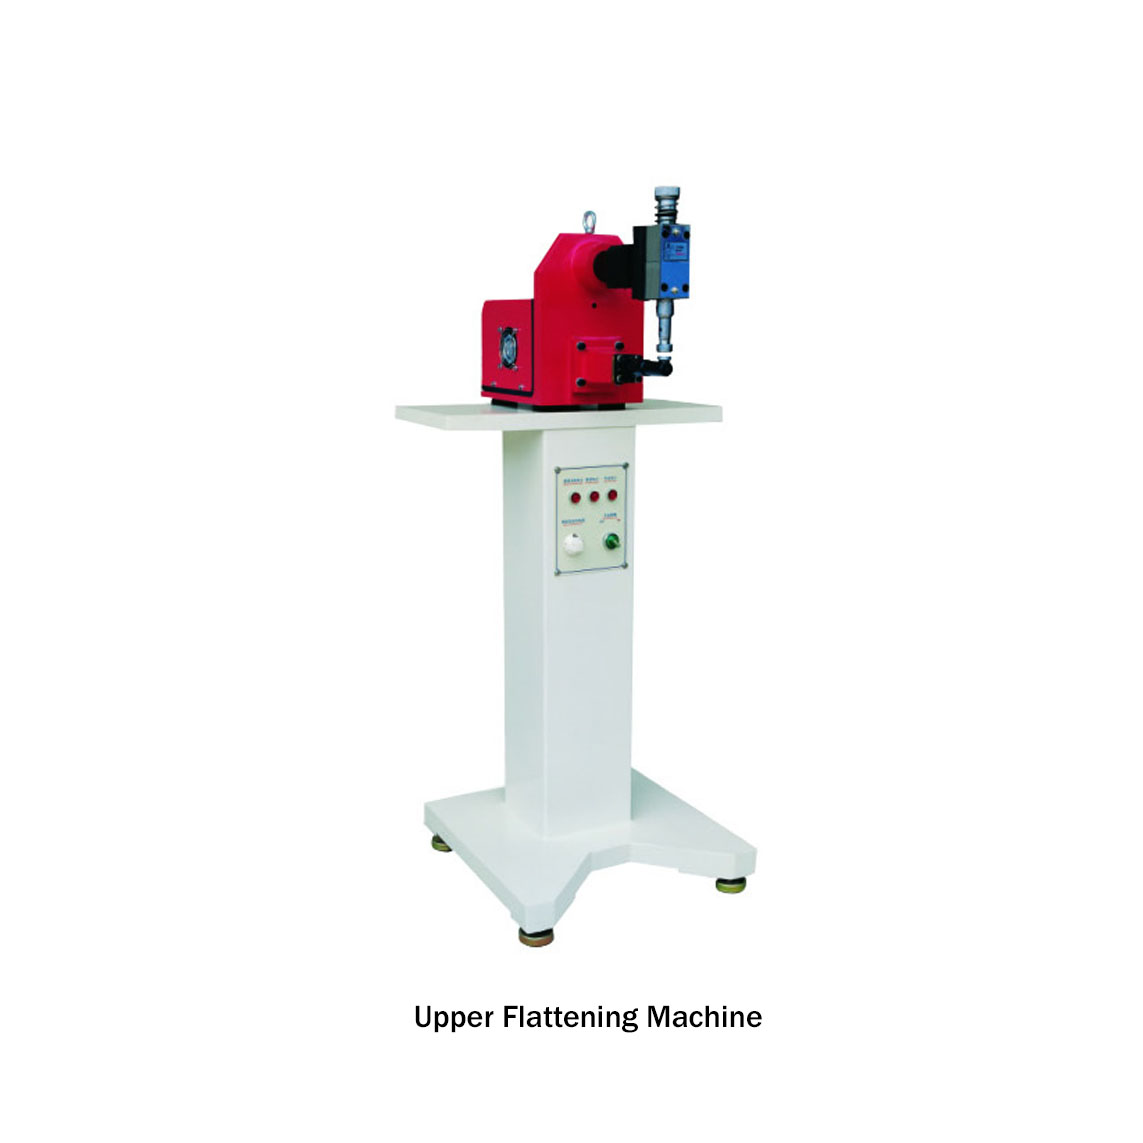 Upper Flattening Machine